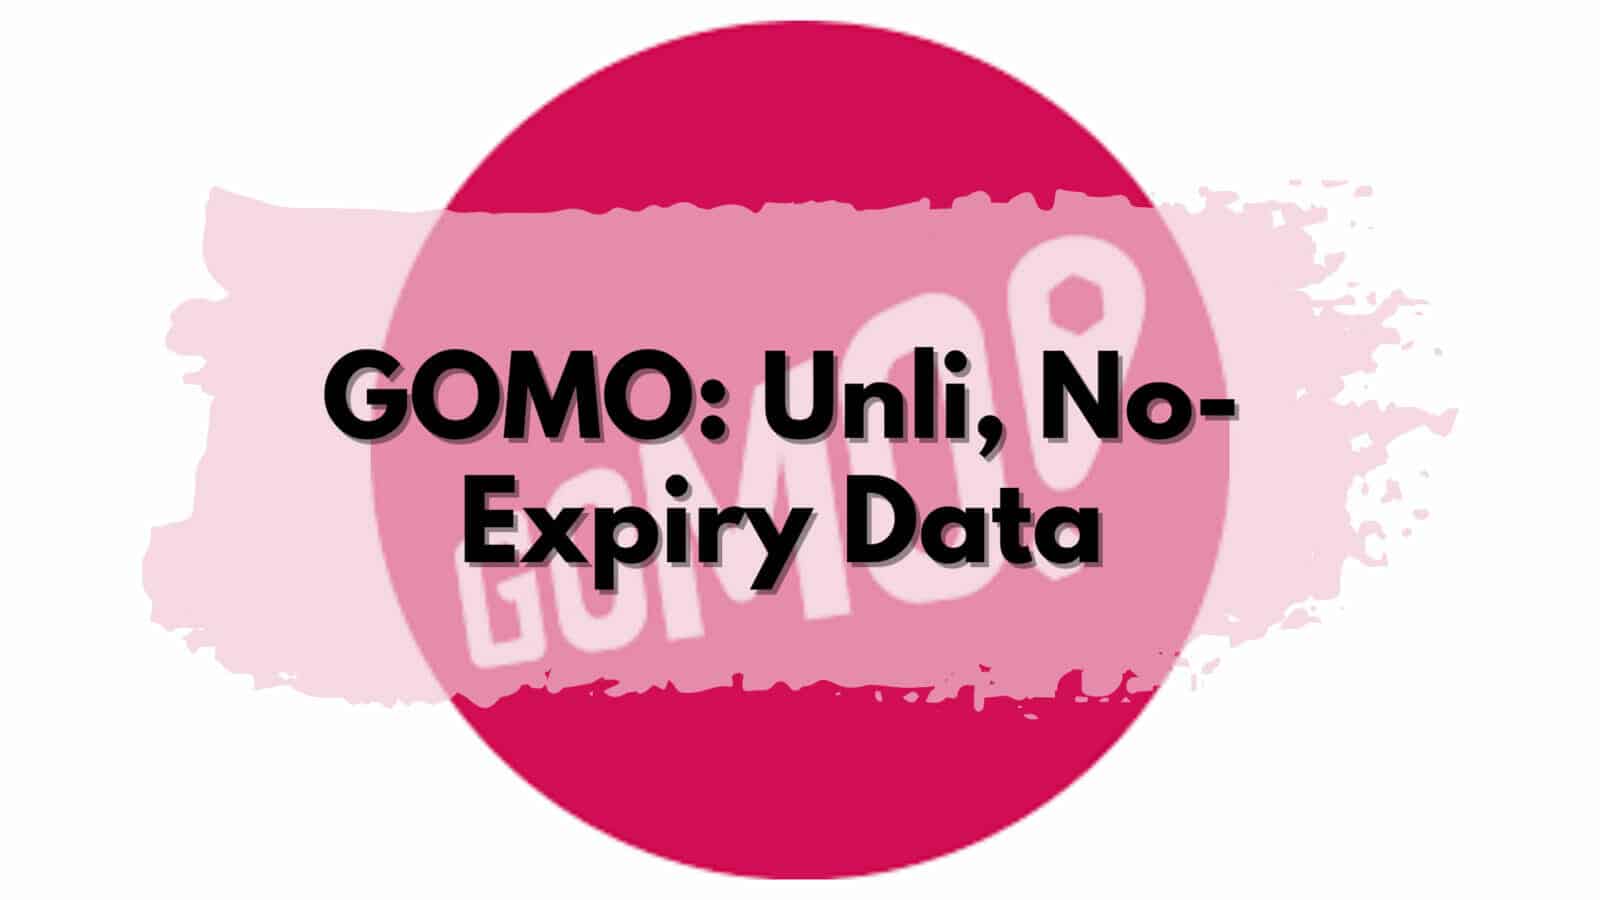 Gomo uni, no expiry data.